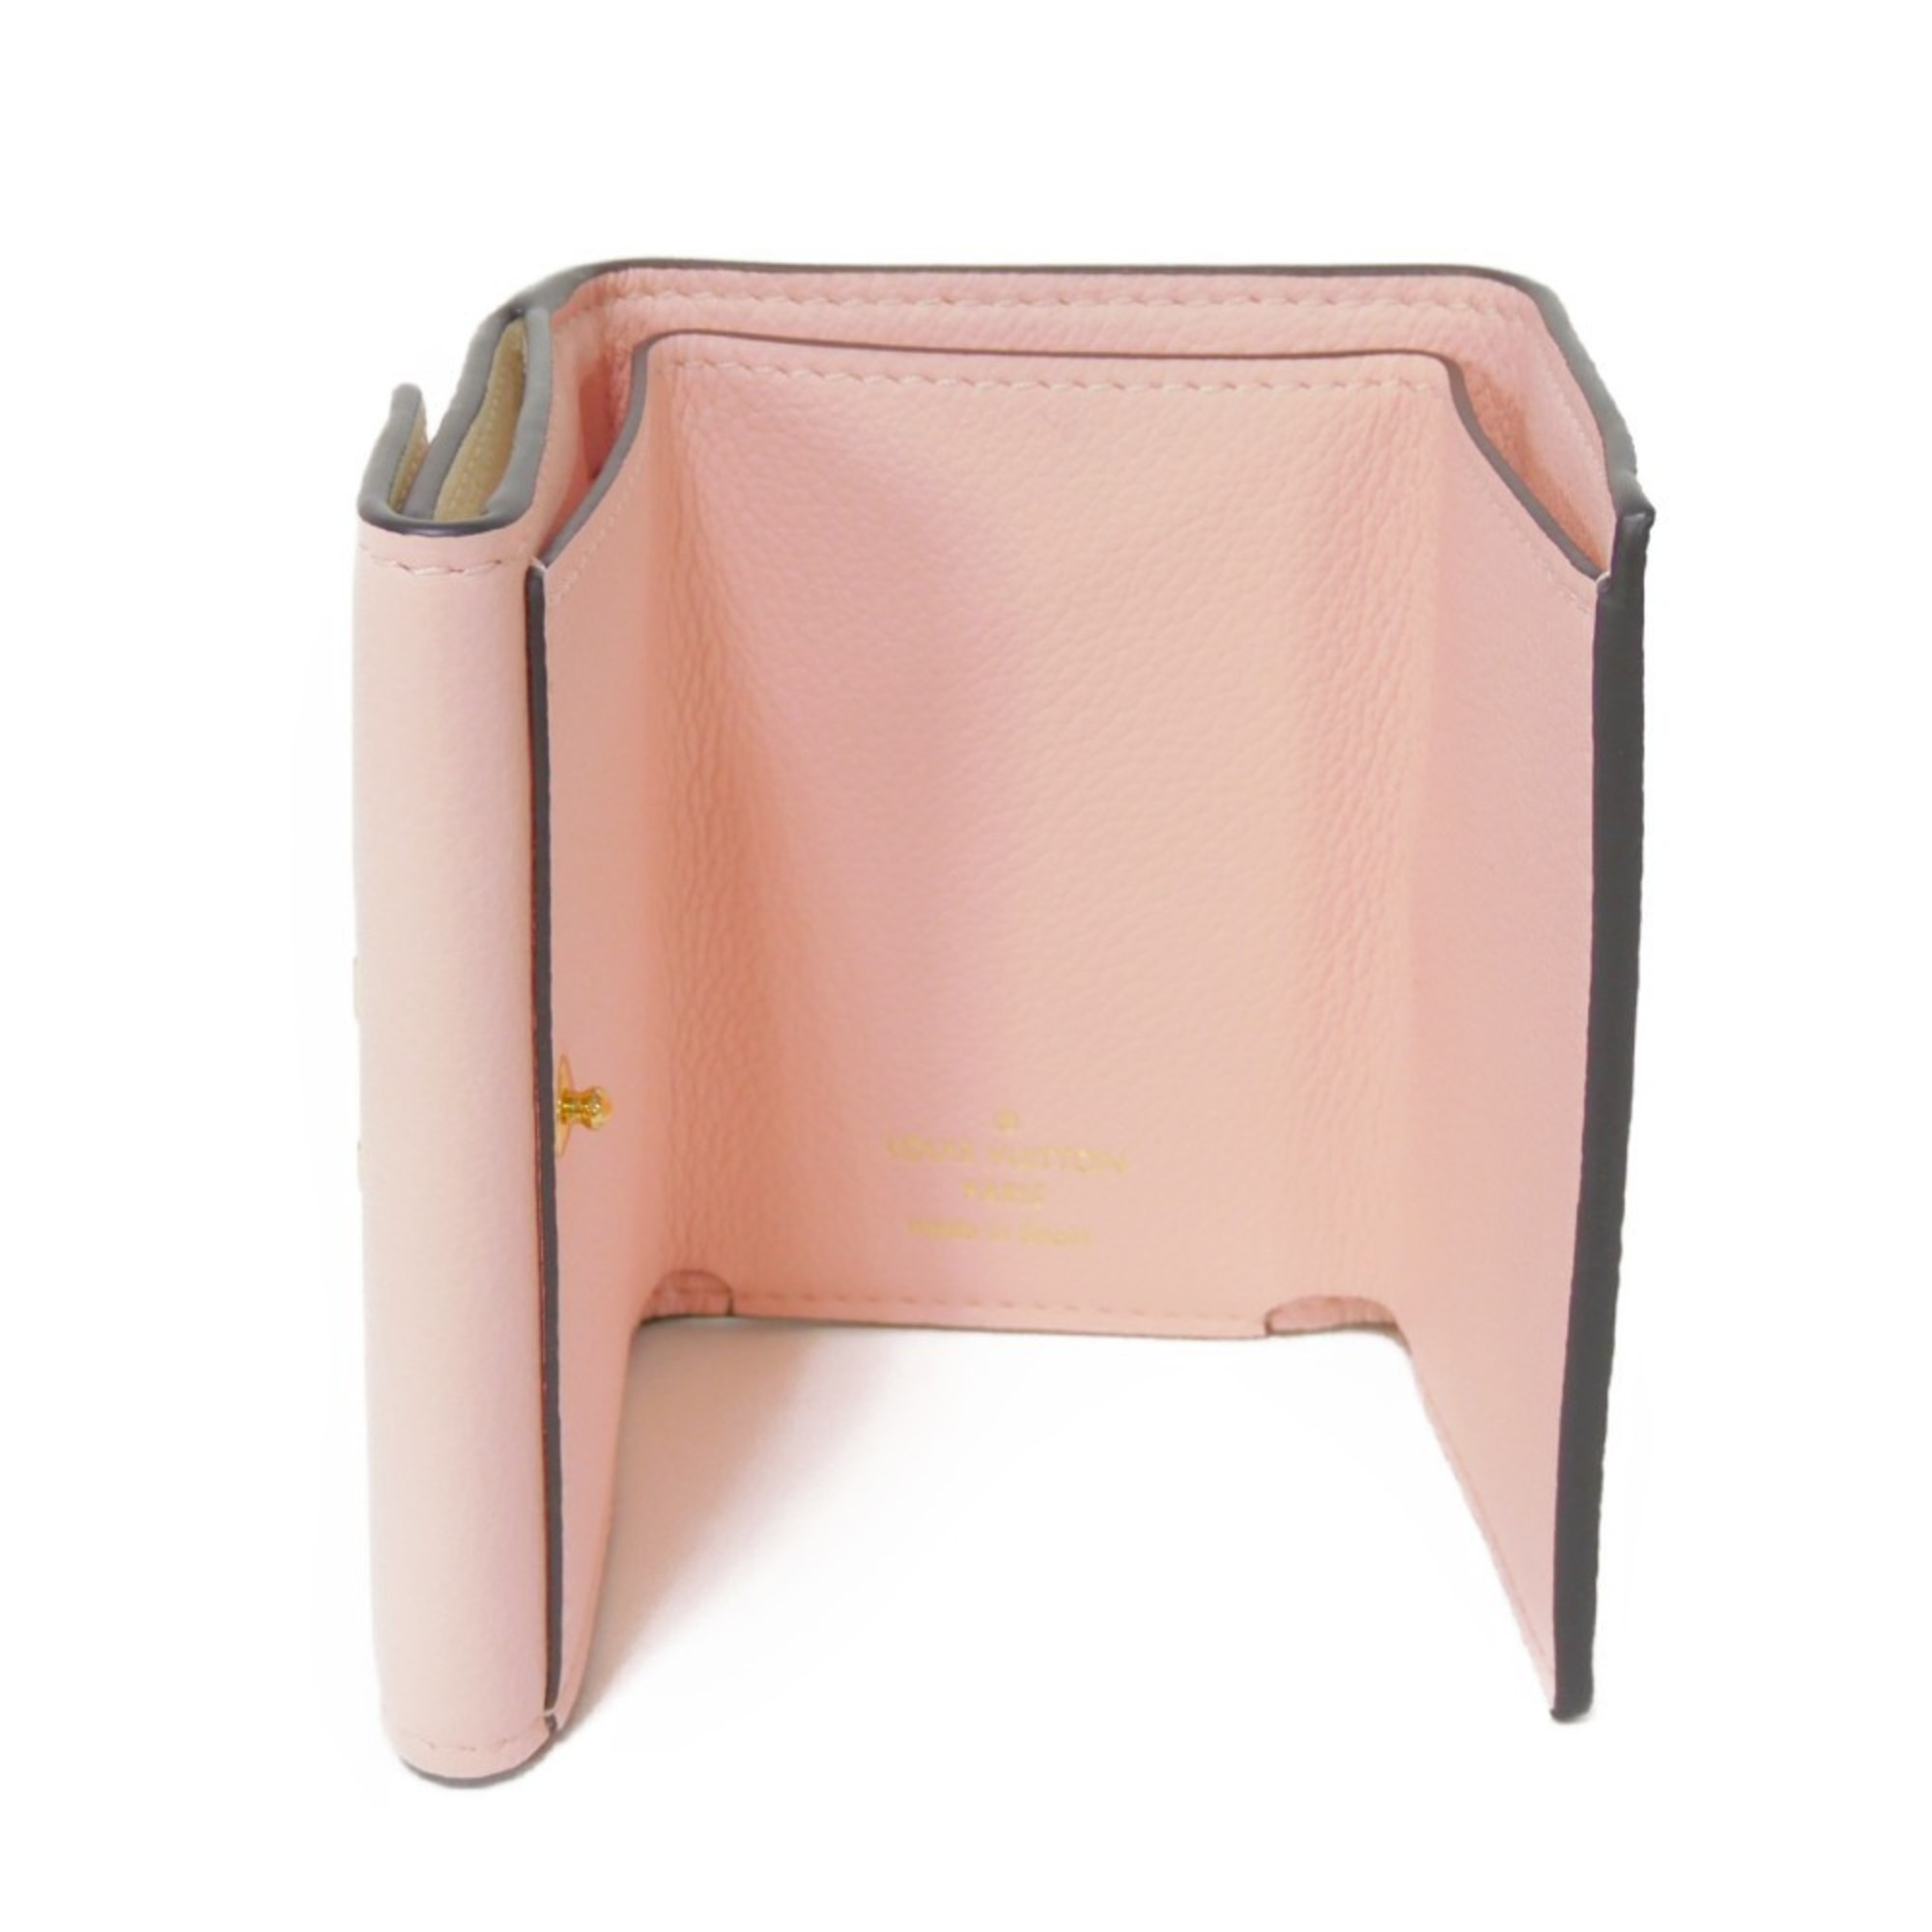 LOUIS VUITTON Trifold Wallet Portefeuille Rock Eau de Rose Quartz Pink Ivory Bicolor LV M80785 Women's